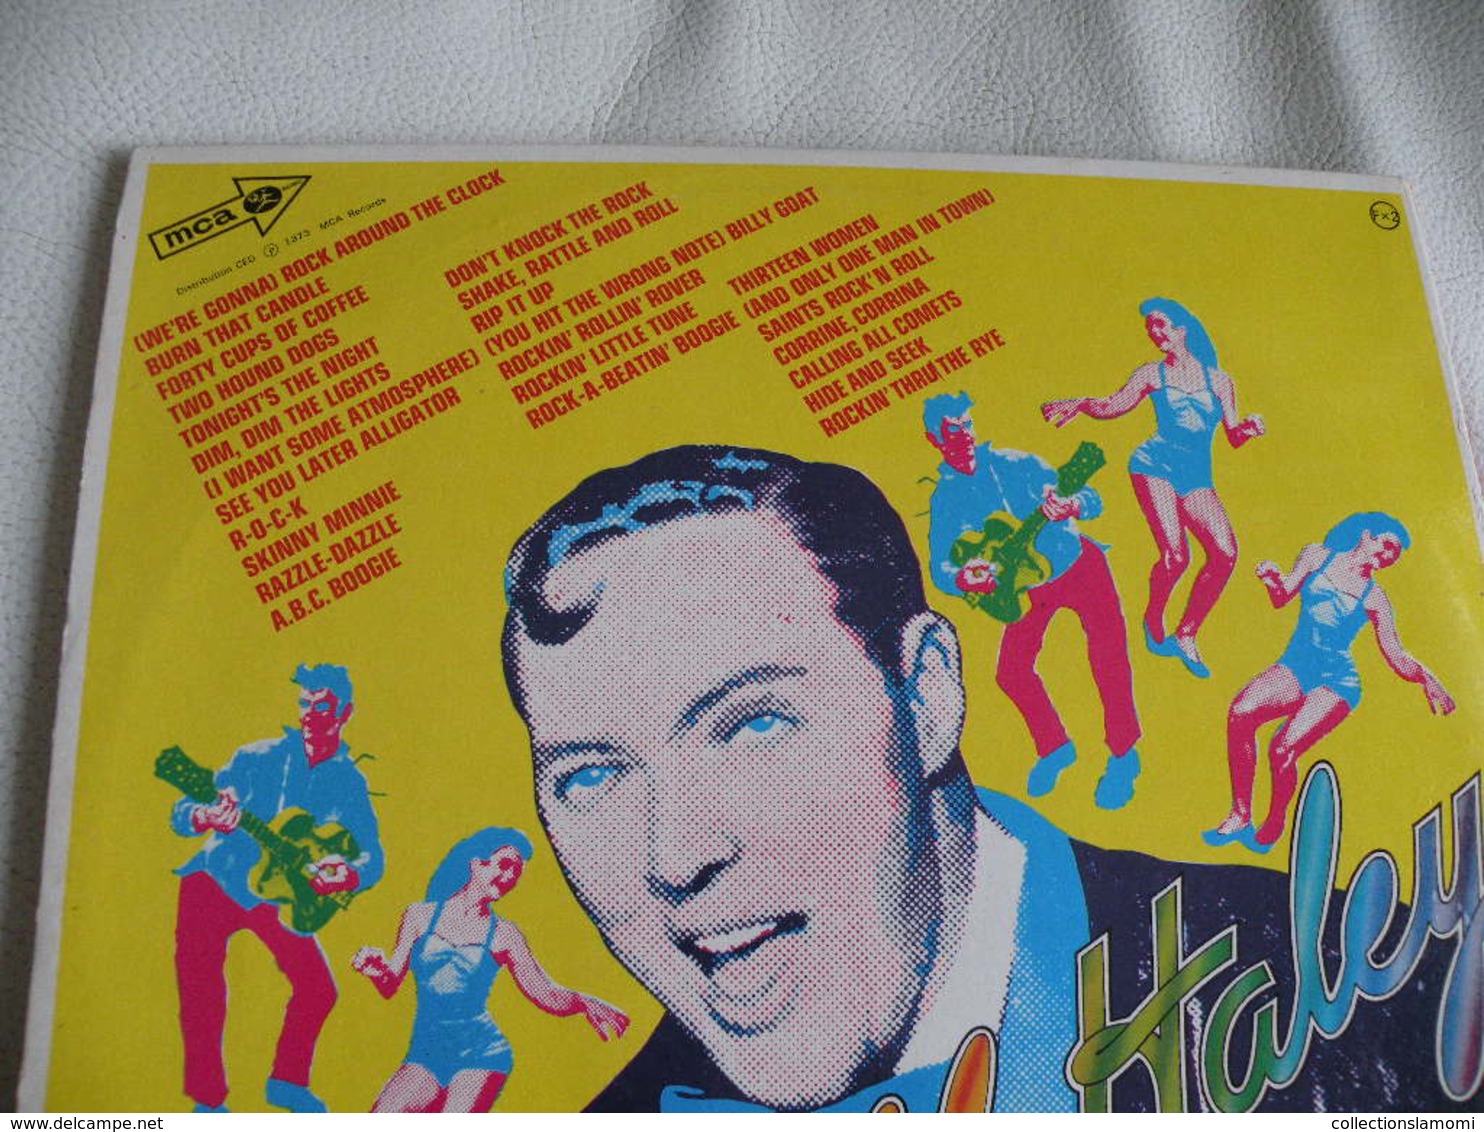 Bill Haley -1973 (Titres sur photos) - Vinyle 33 T LP double album